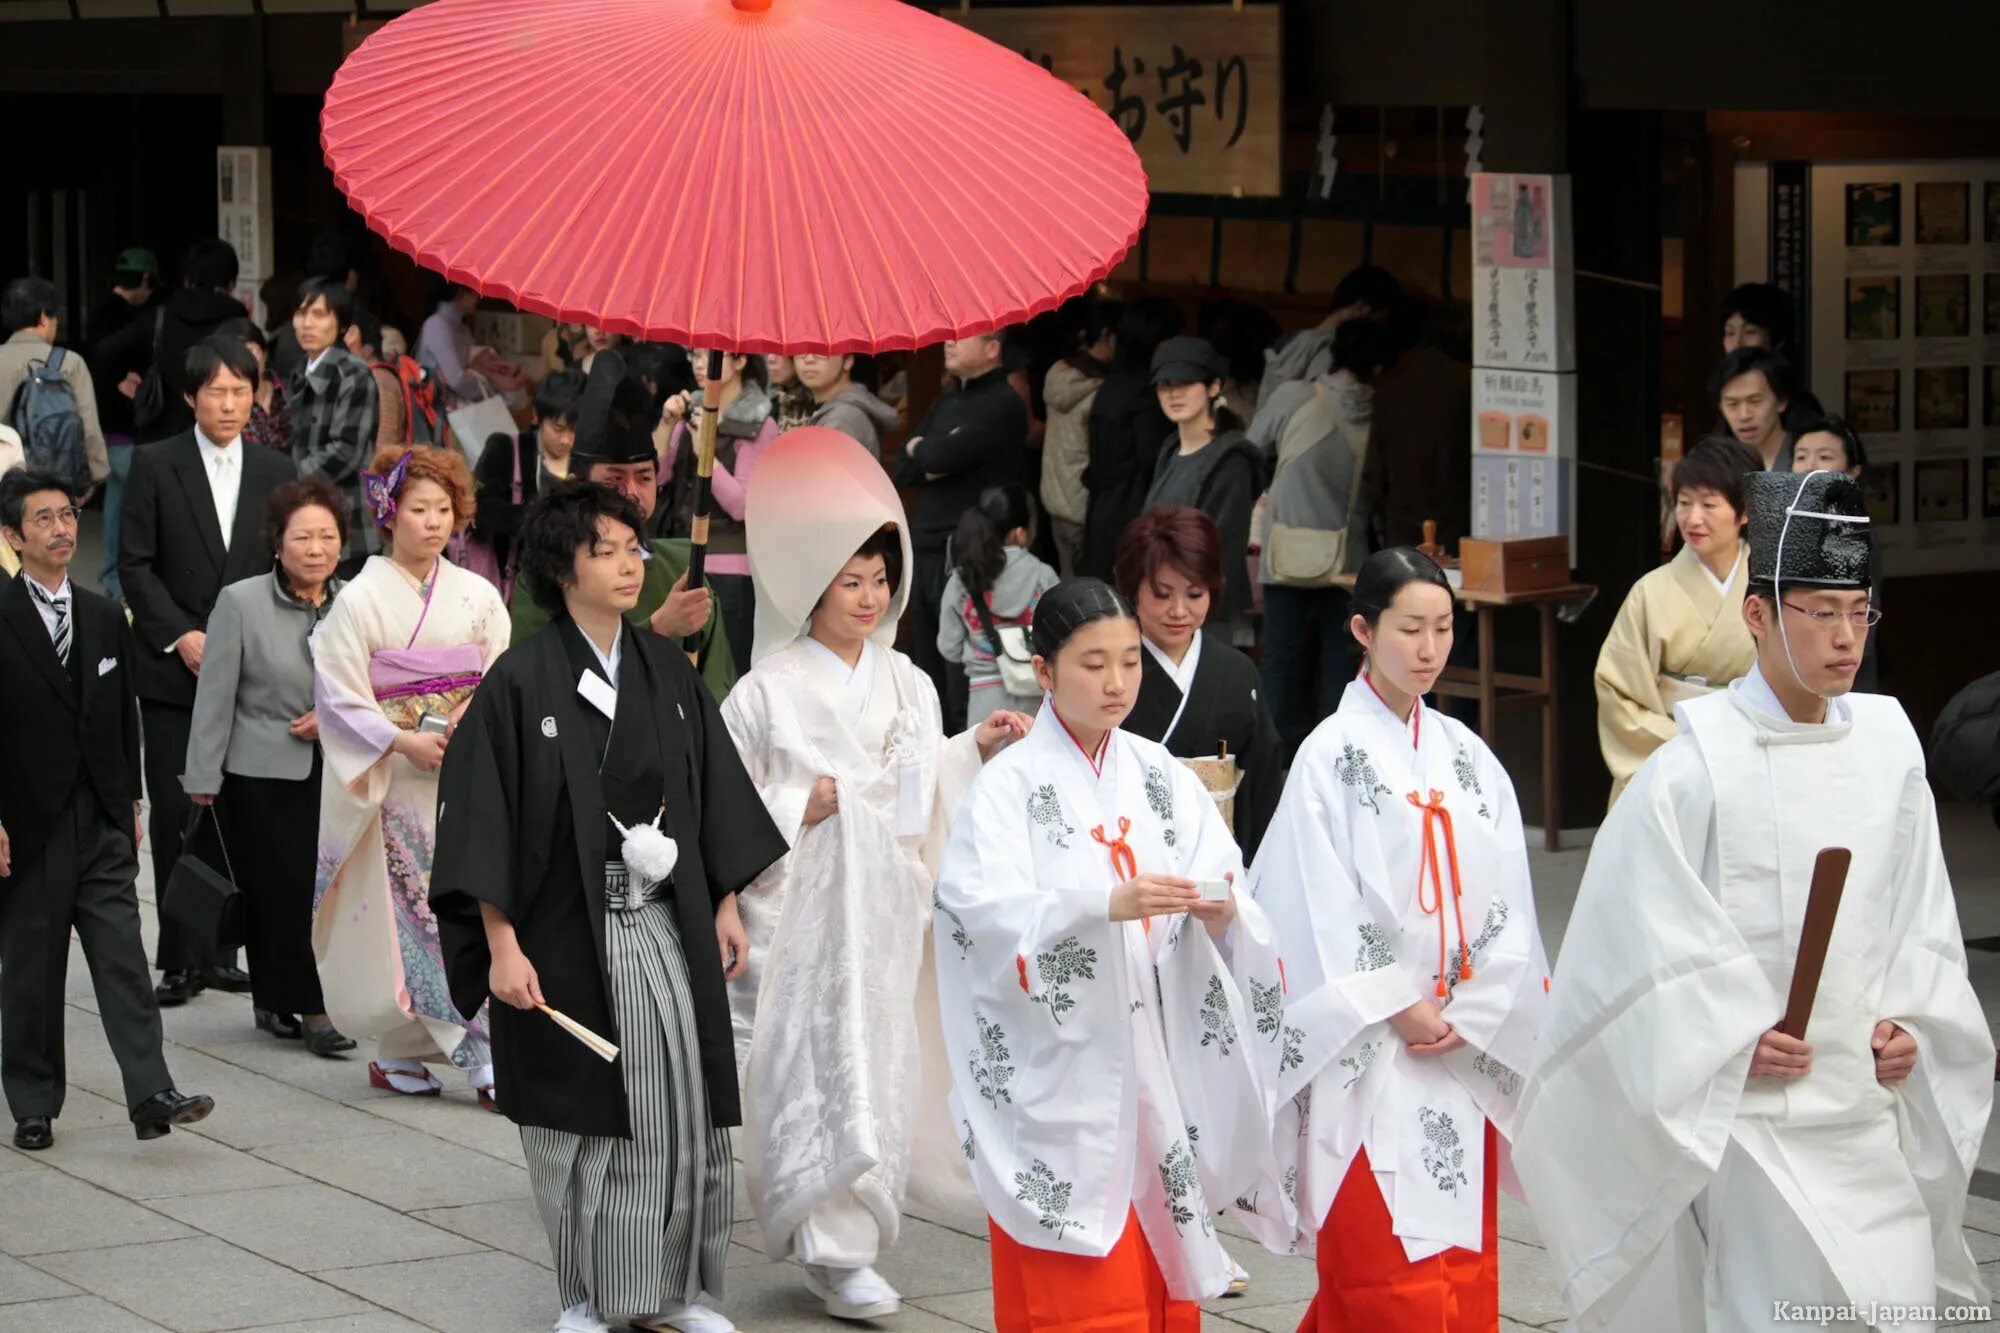 Япония свадьбы Shinto Style. Церемония свадьбы Синто Япония. Японская свадьба в синтоистском храме. Свадьба в Японии традиции и обычаи. Японский жених